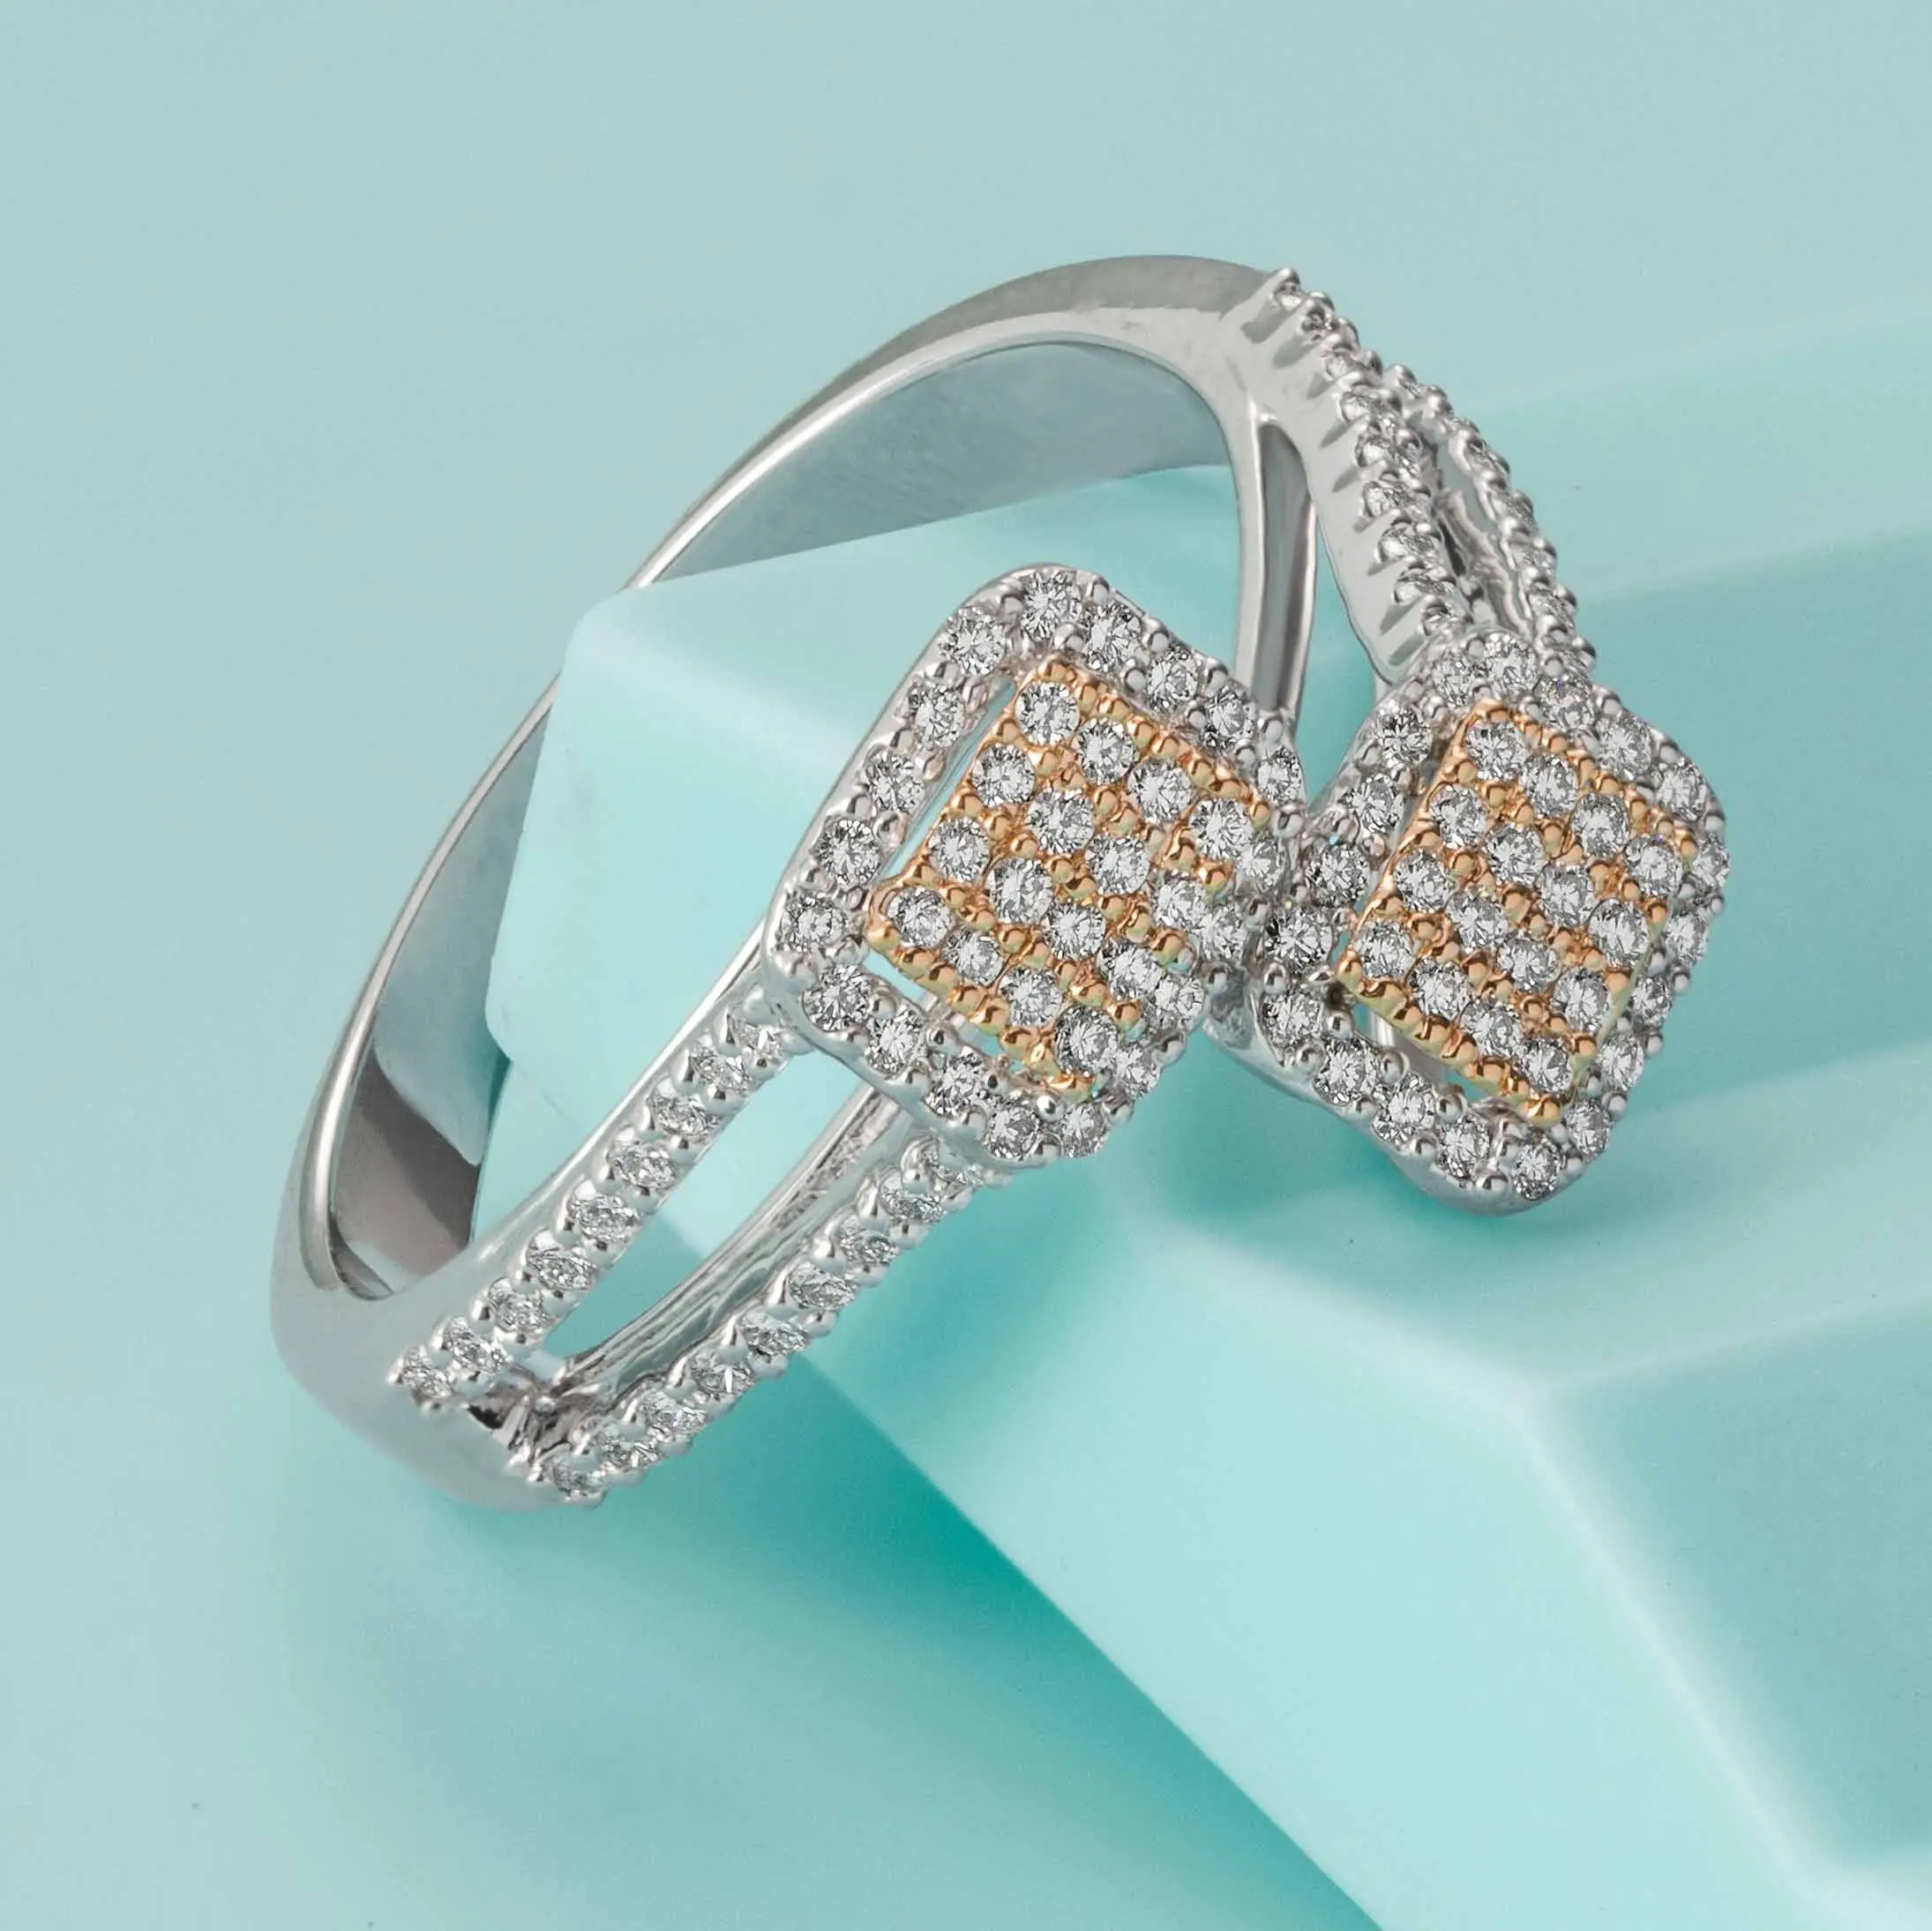 Toptan ucuz özel son tasarım elmas yüzük kadın düğün söz elmas değeri takı